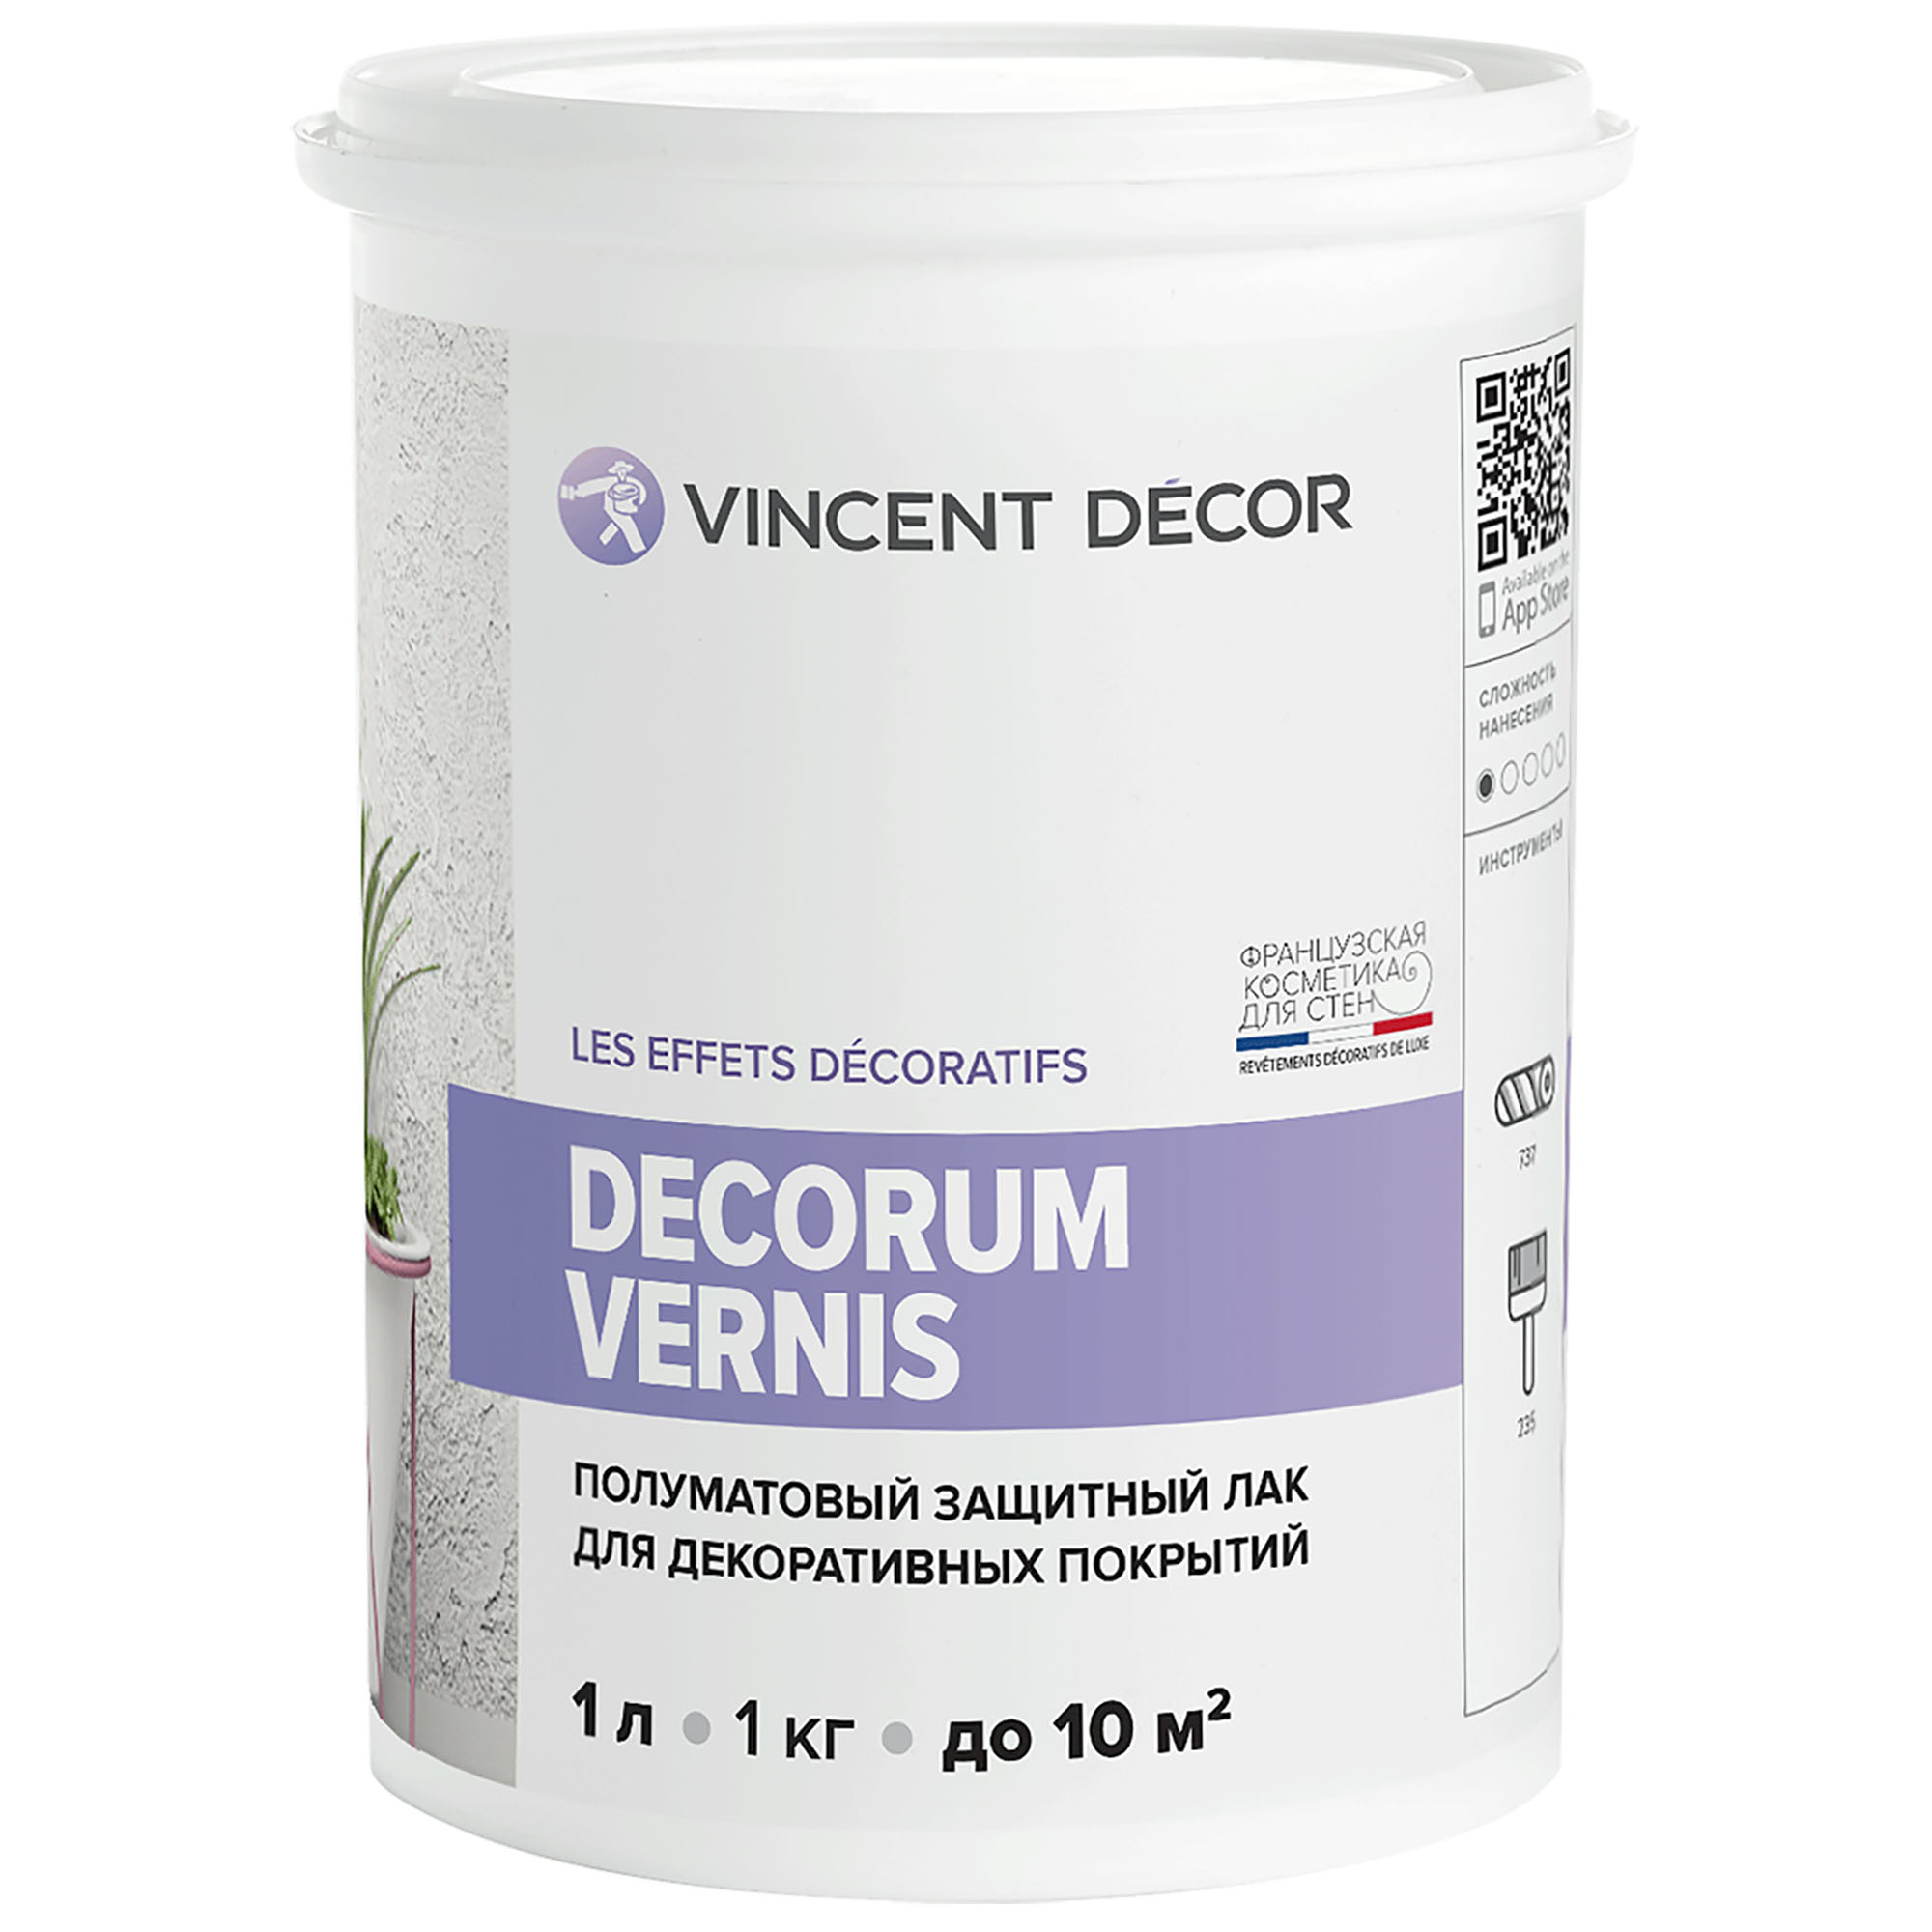 Лак защитный для декоративных покрытий Vincent Decor Decorum Vernis полуматовый 1 л vincent decor decorum vernis бесцветный глянцевая 1 л